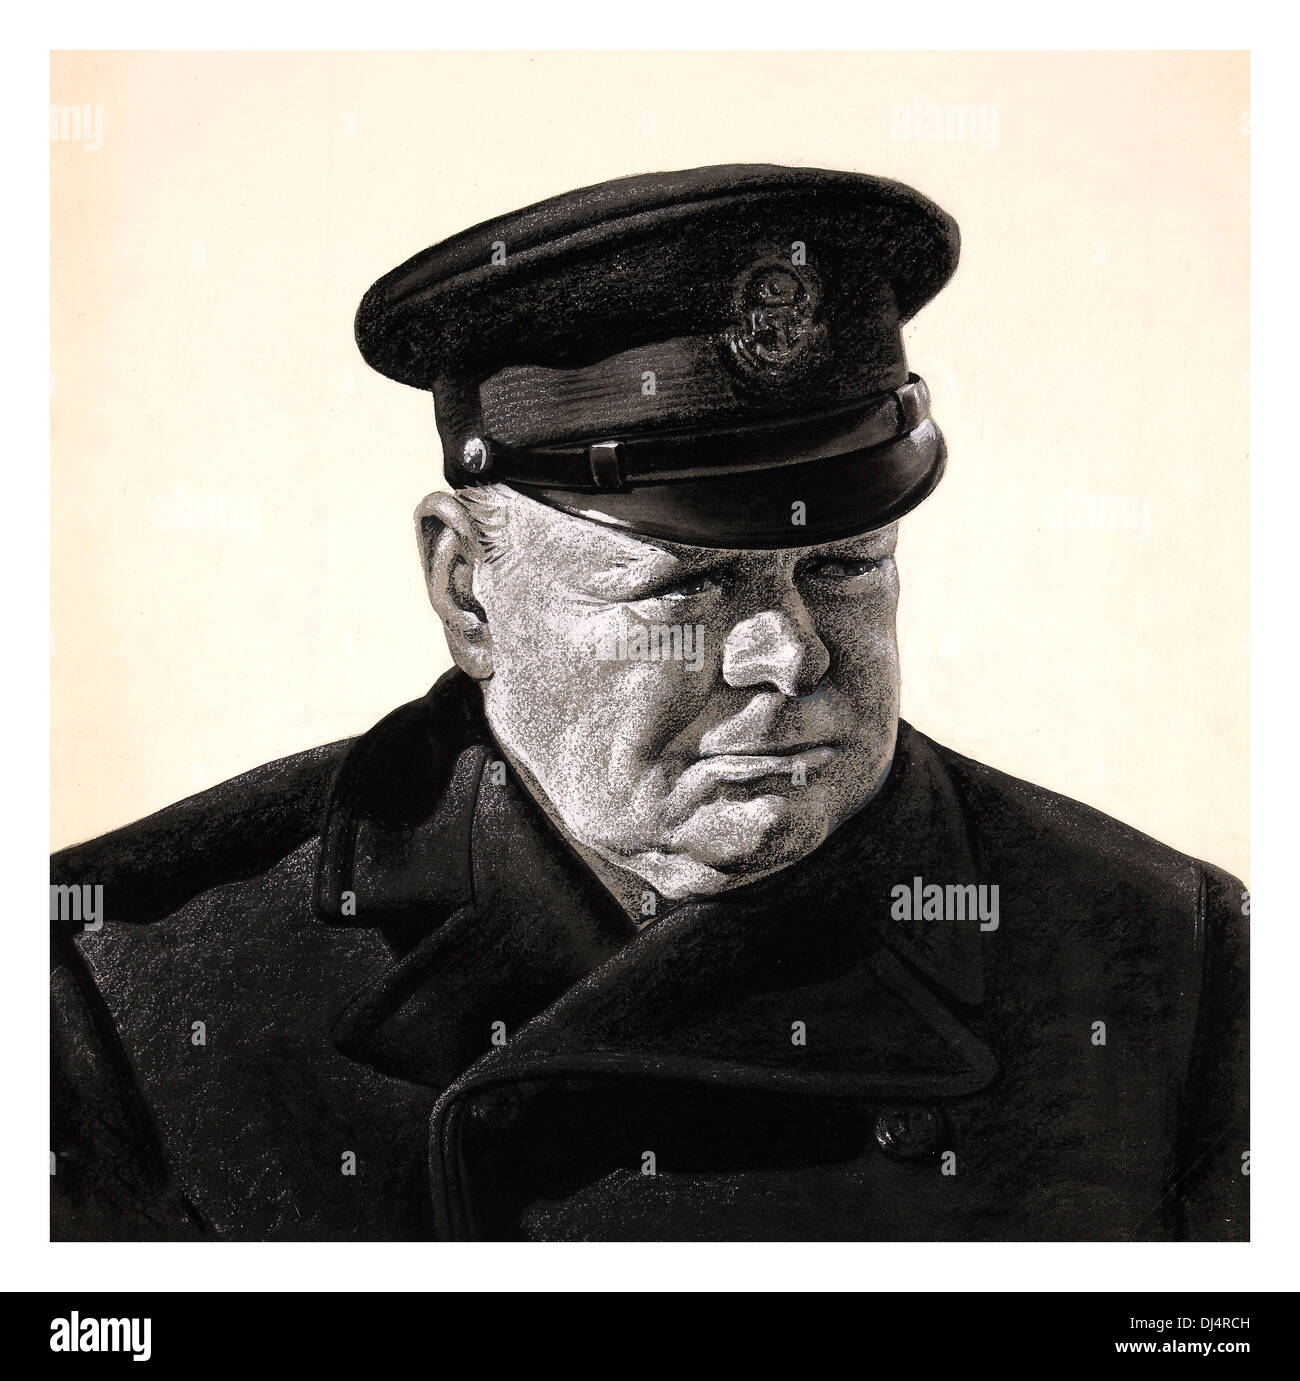 WW2 peinture de propagande de présider le premier ministre Winston Churchill dans l'uniforme de la marine, l'un des meilleurs dirigeants de la Grande-Bretagne Banque D'Images